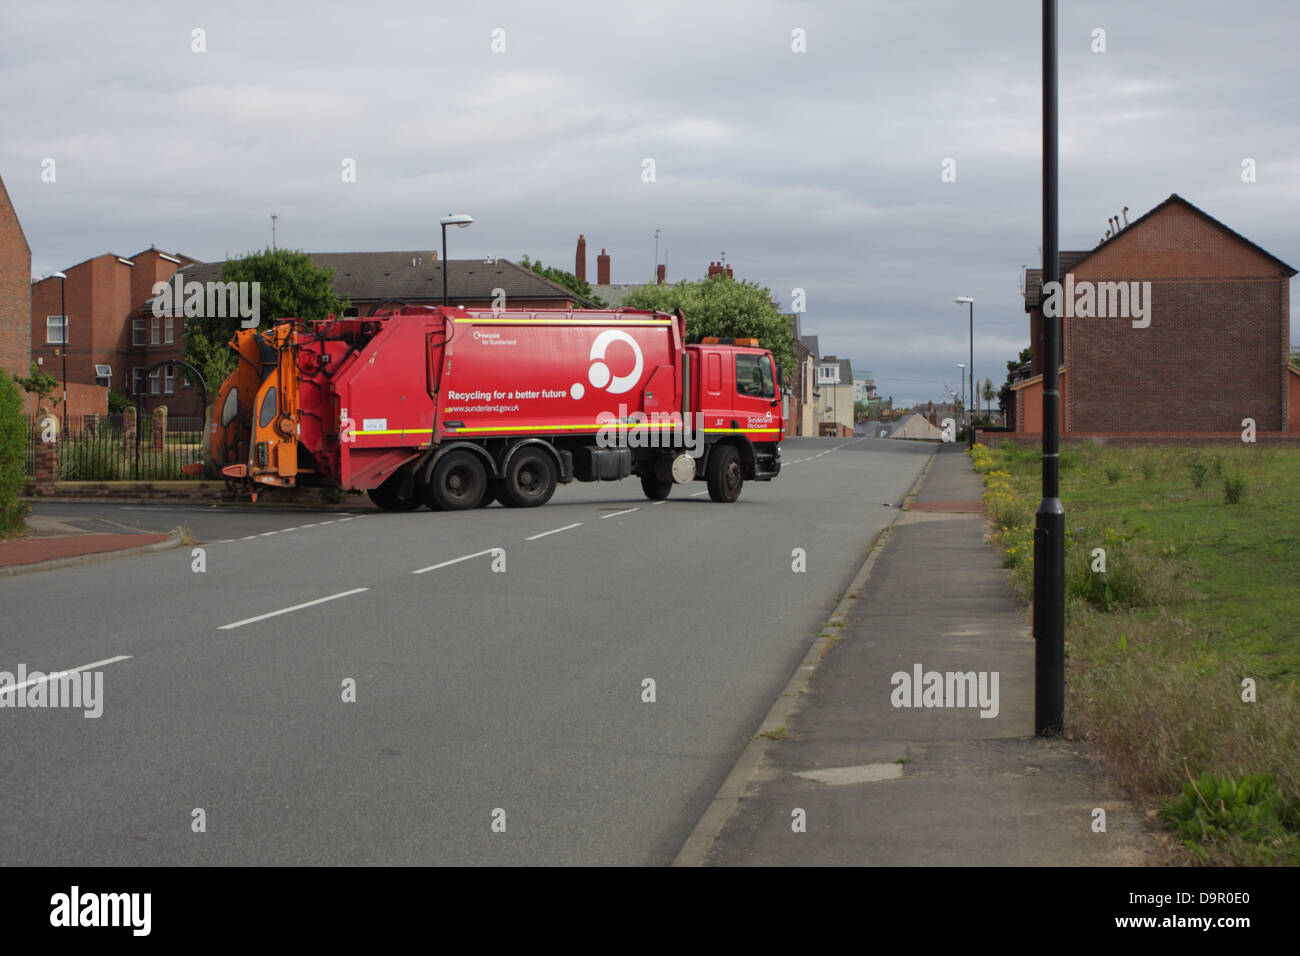 Bin / camion per la raccolta dei rifiuti, camion della spazzatura. Foto Stock